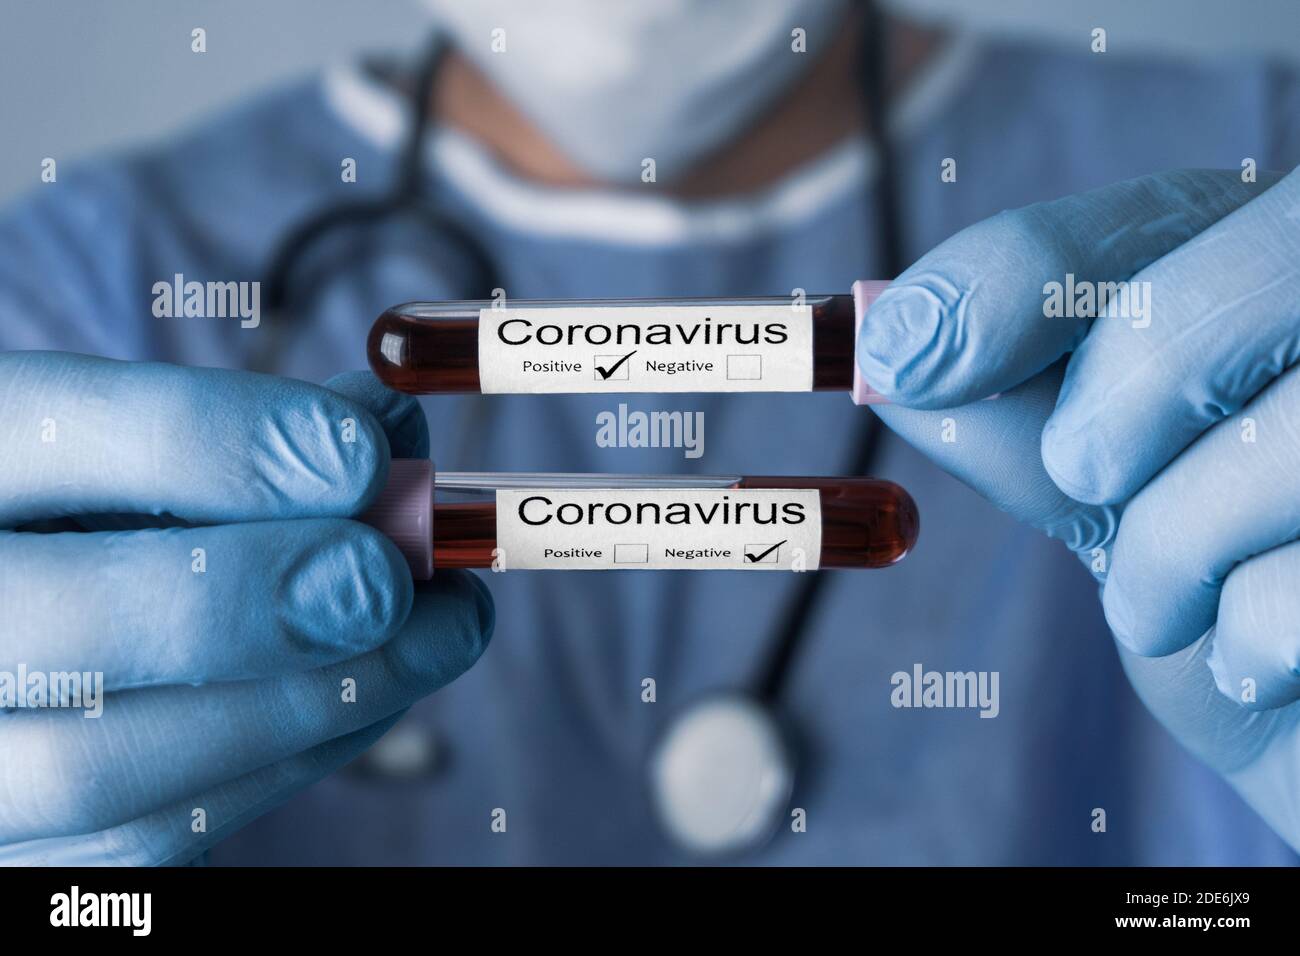 Il medico tiene provette per analisi con campioni di sangue di Coronavirus positivi e negativi. Covid 19 concetto e background. Foto Stock